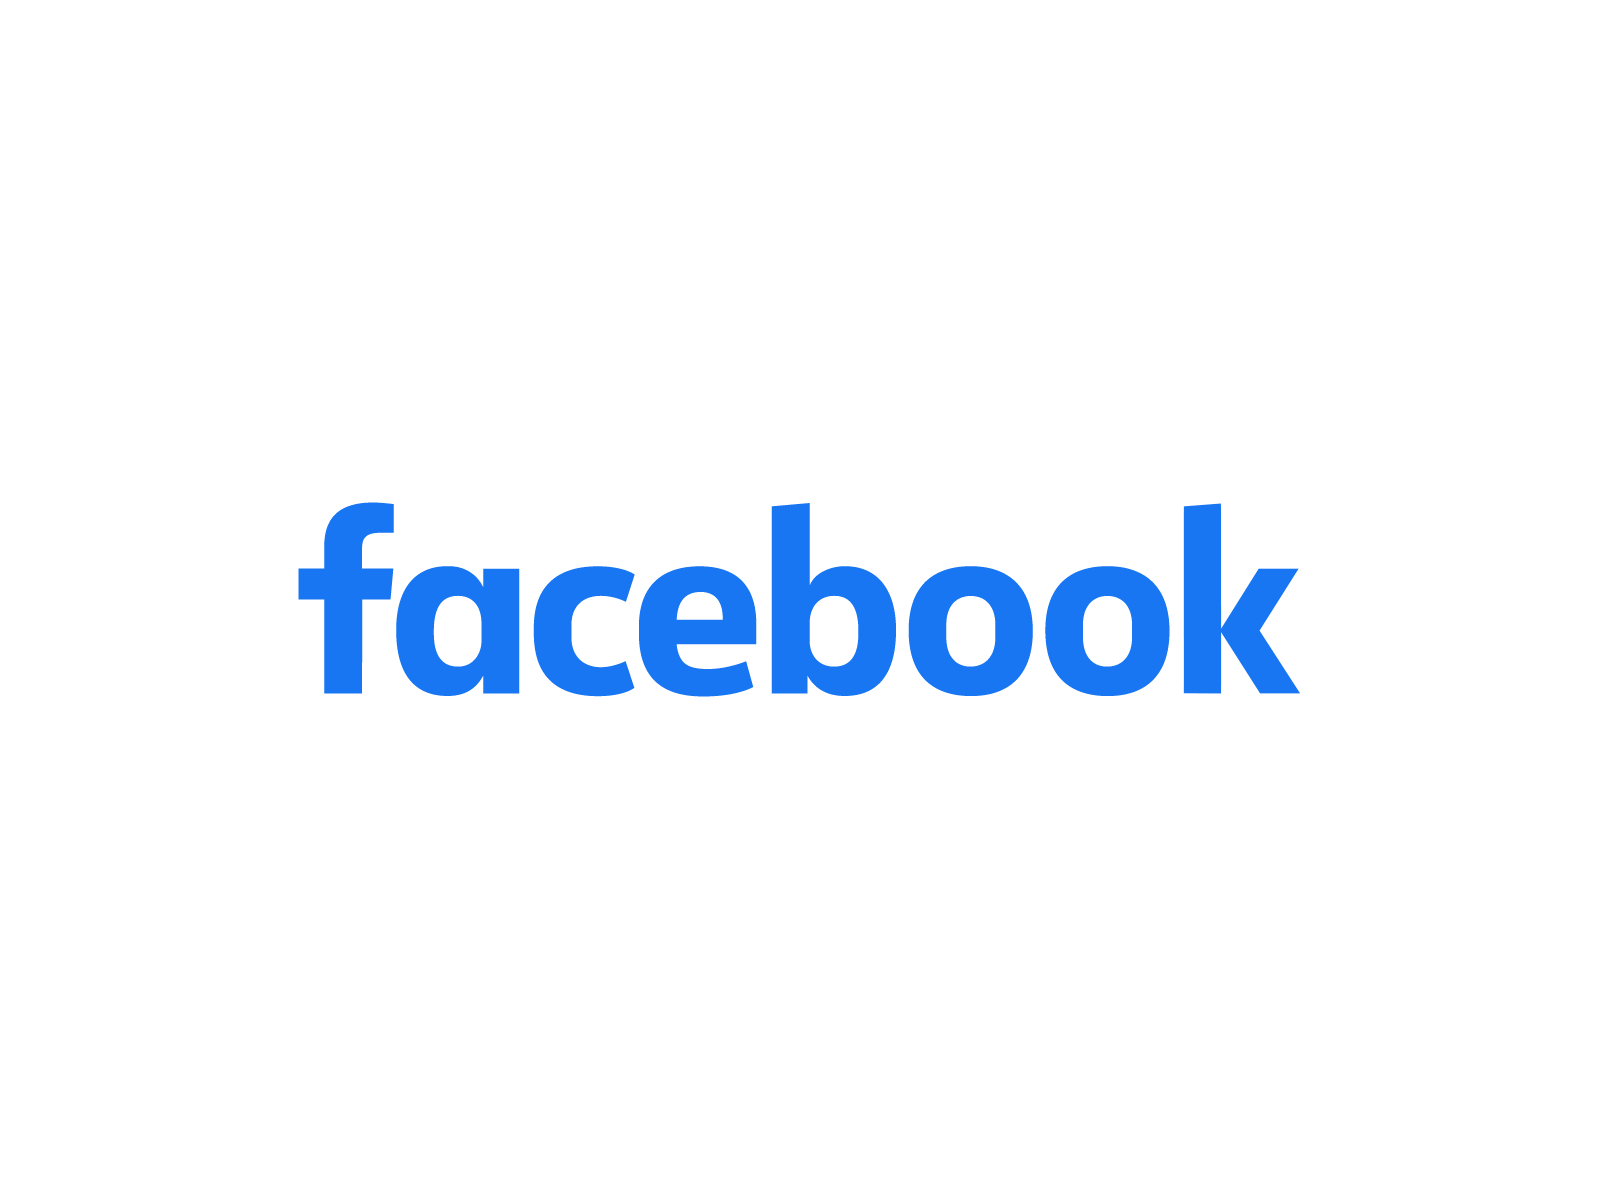 Facebook Logo Animation 2d animation book facebook flip gif logo